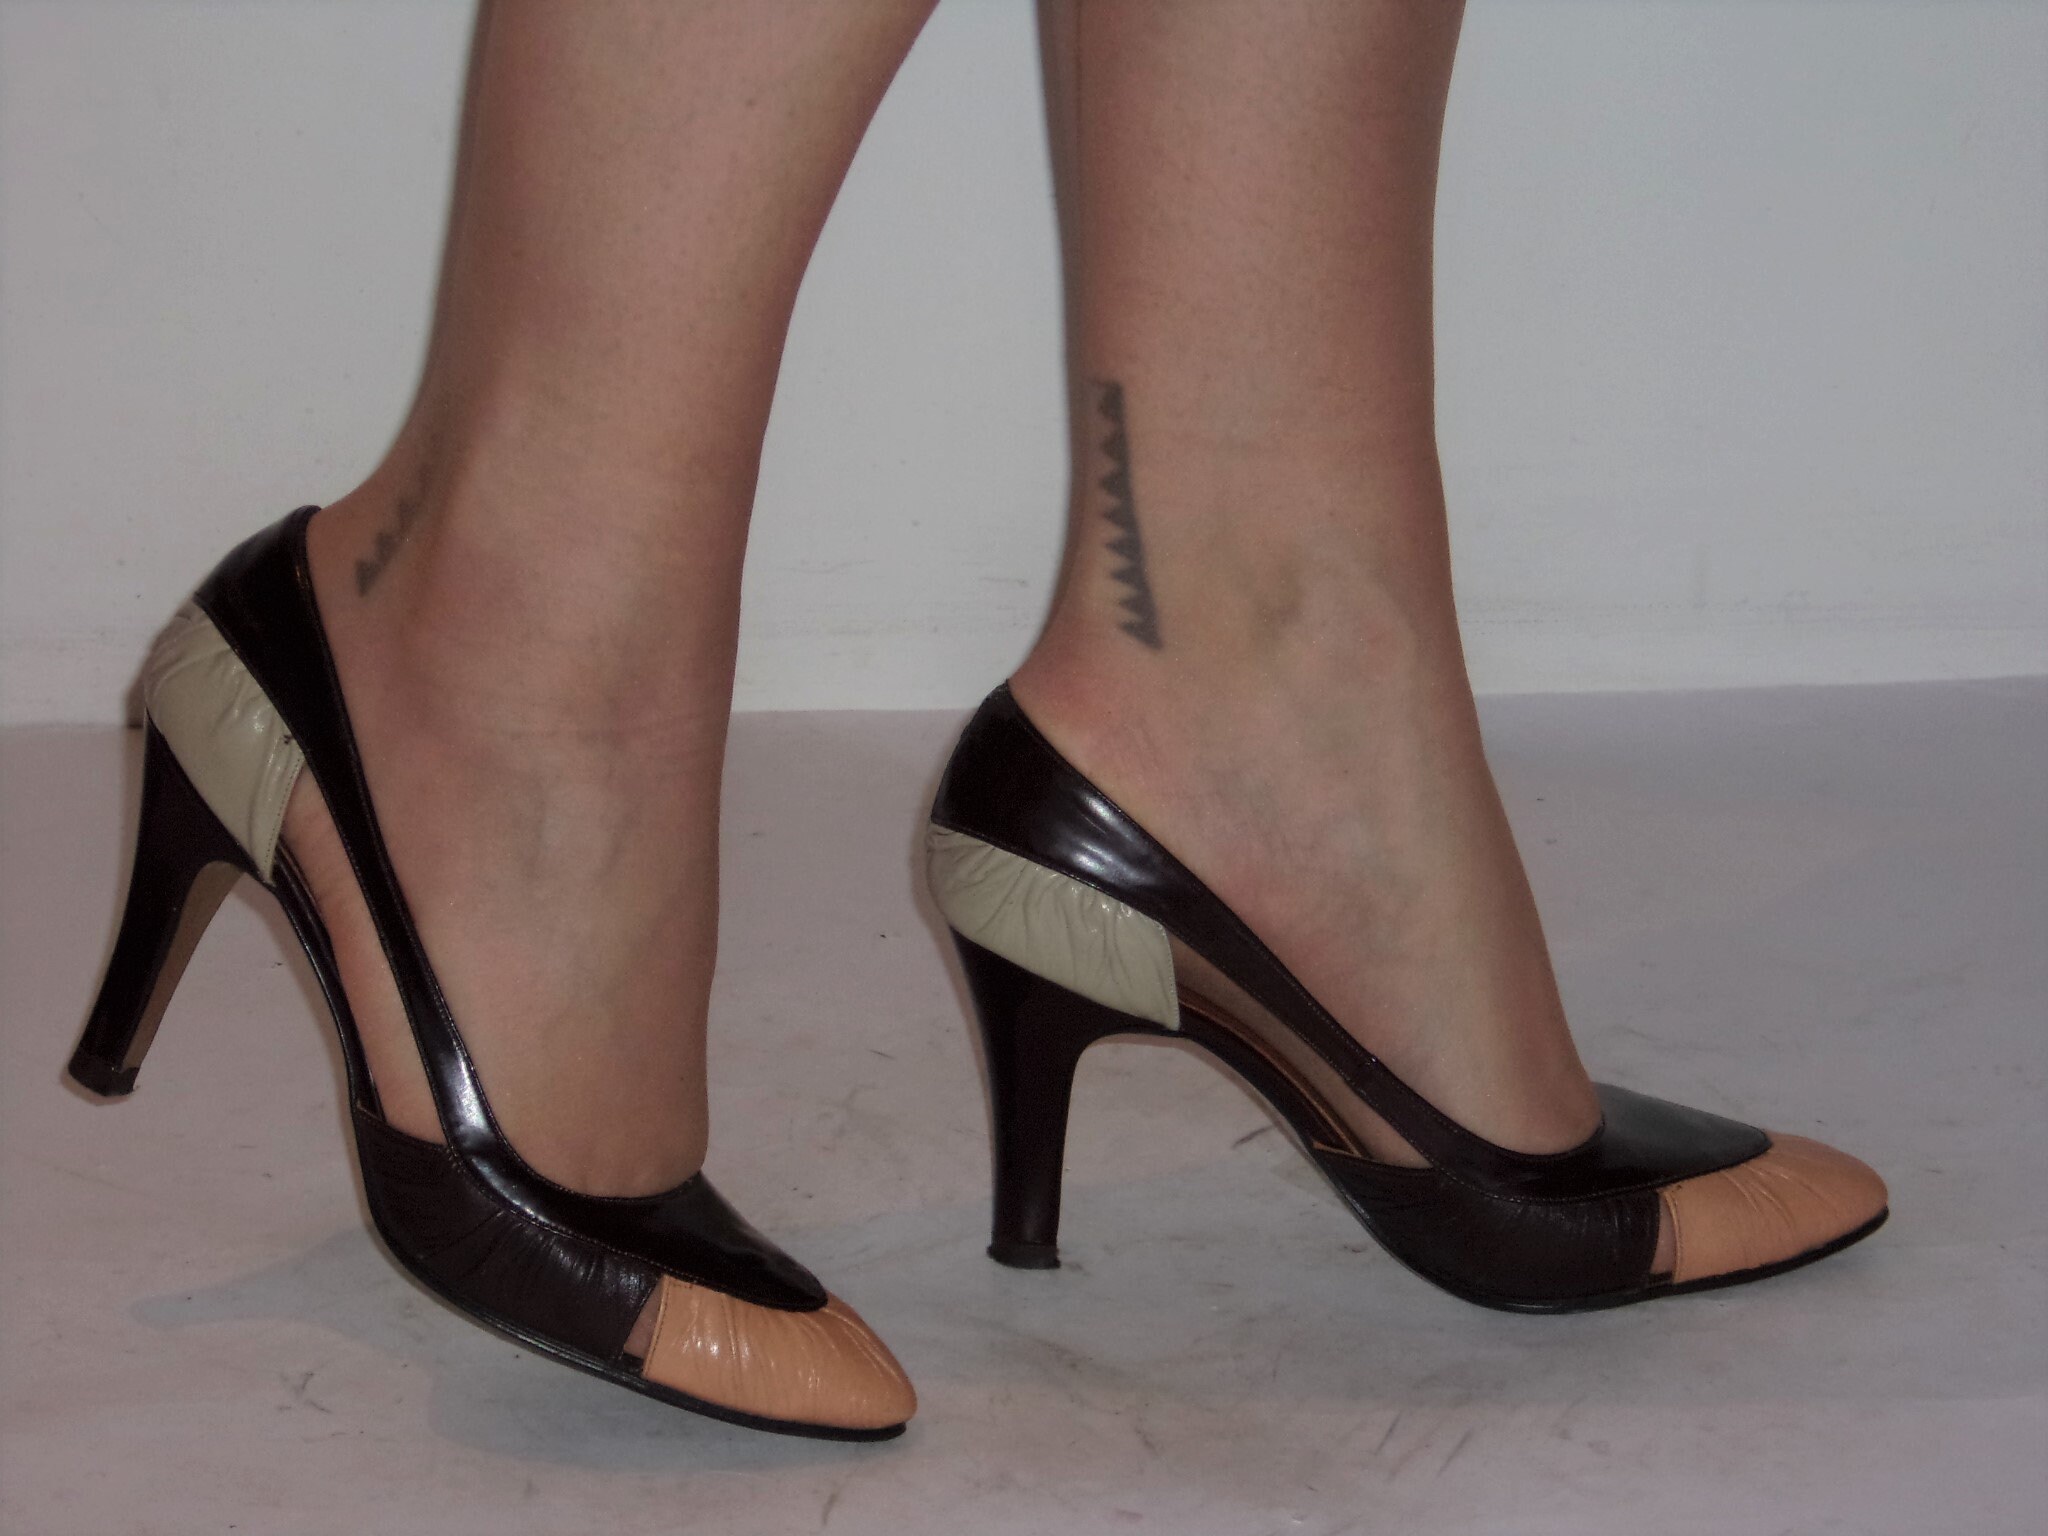 1970s high heels